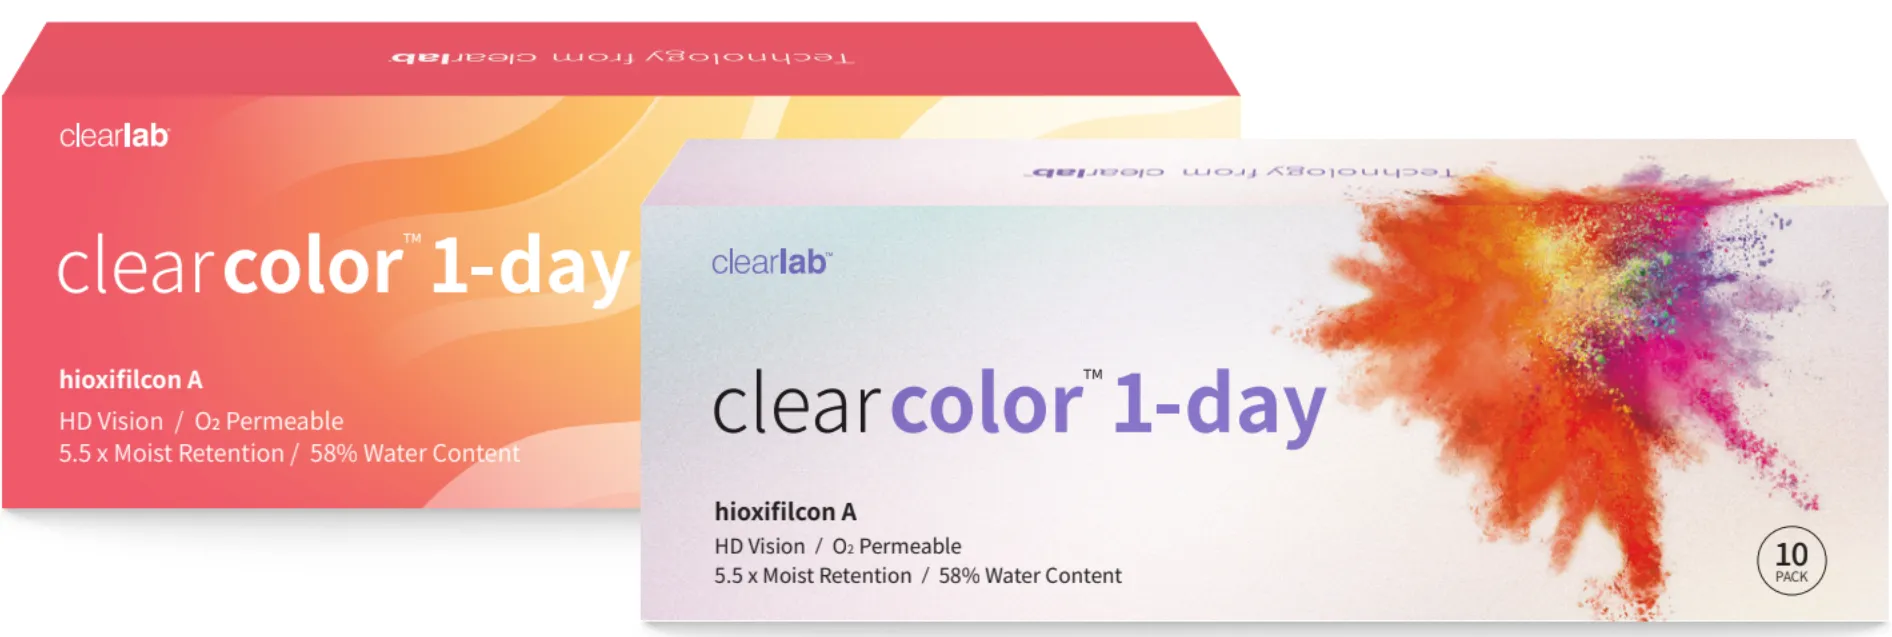 ClearLab ClearColor 1-Day kolorowe soczewki kontaktowe błękitne -3.50, 10 szt.